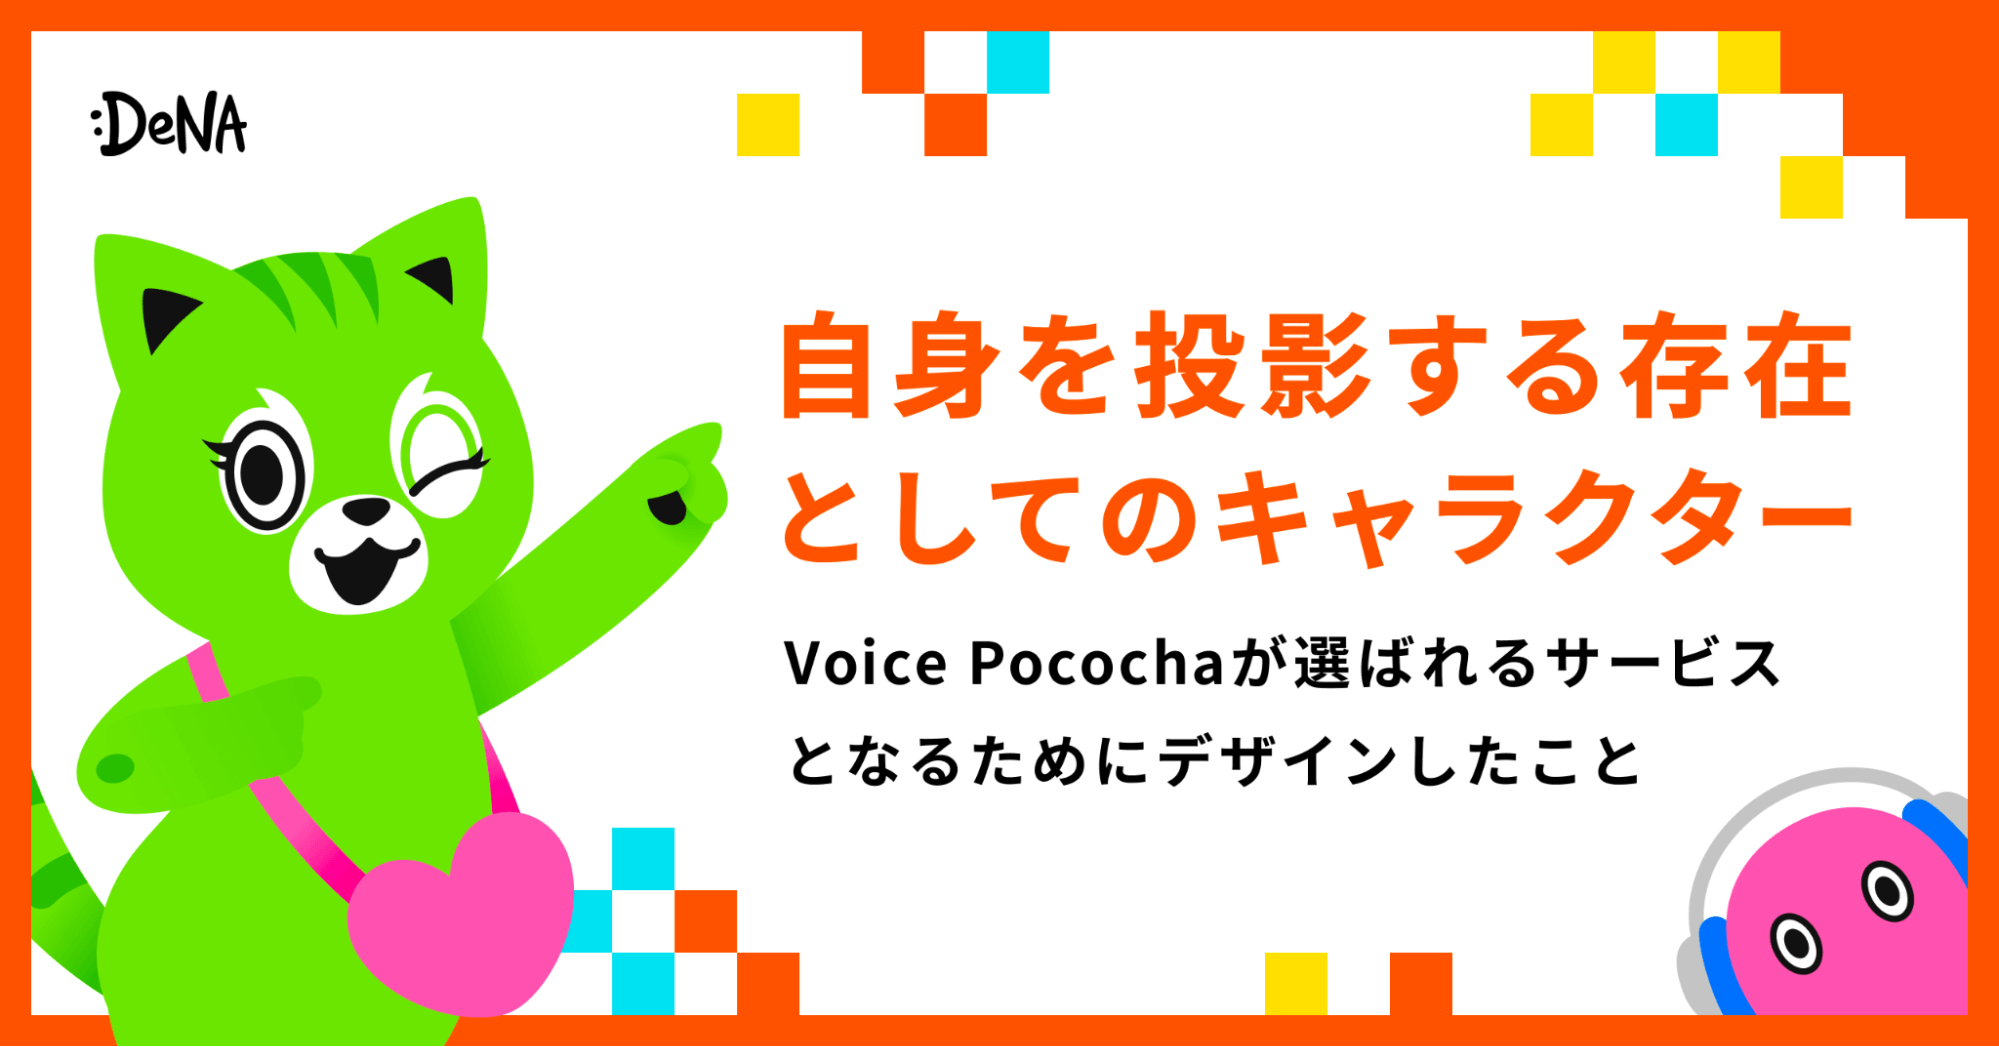 自身を投影する存在”としてのキャラクター。Voice Pocochaが選ばれるサービスとなるためにデザインしたこと｜Cocoda